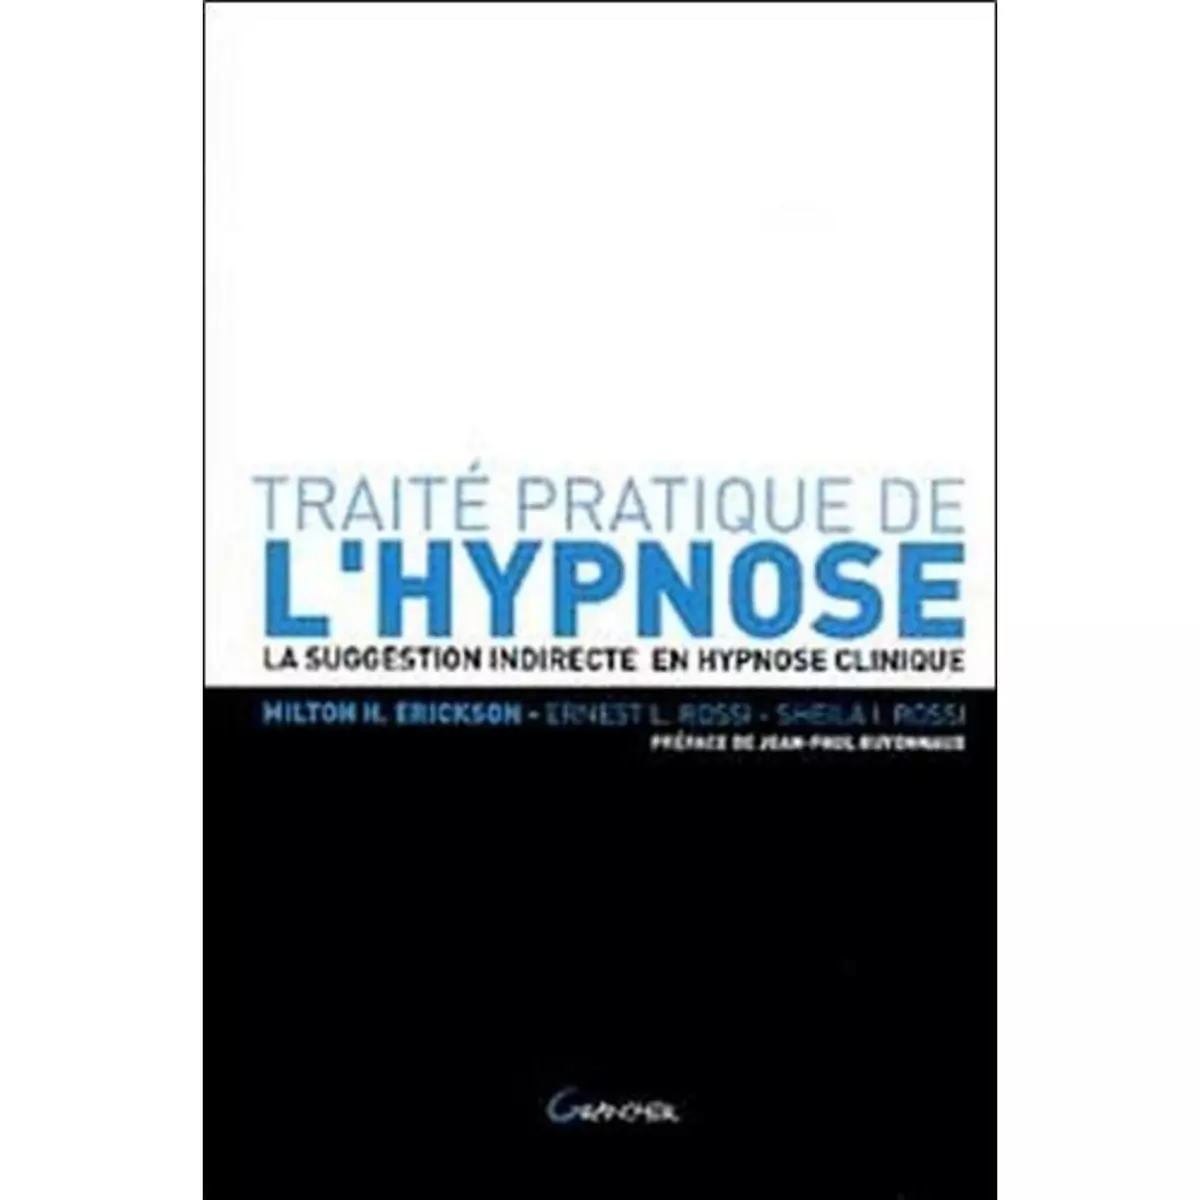  TRAITE PRATIQUE DE L'HYPNOSE. LA SUGGESTION INDIRECTE EN HYPNOSE CLINIQUE, Erickson Milton